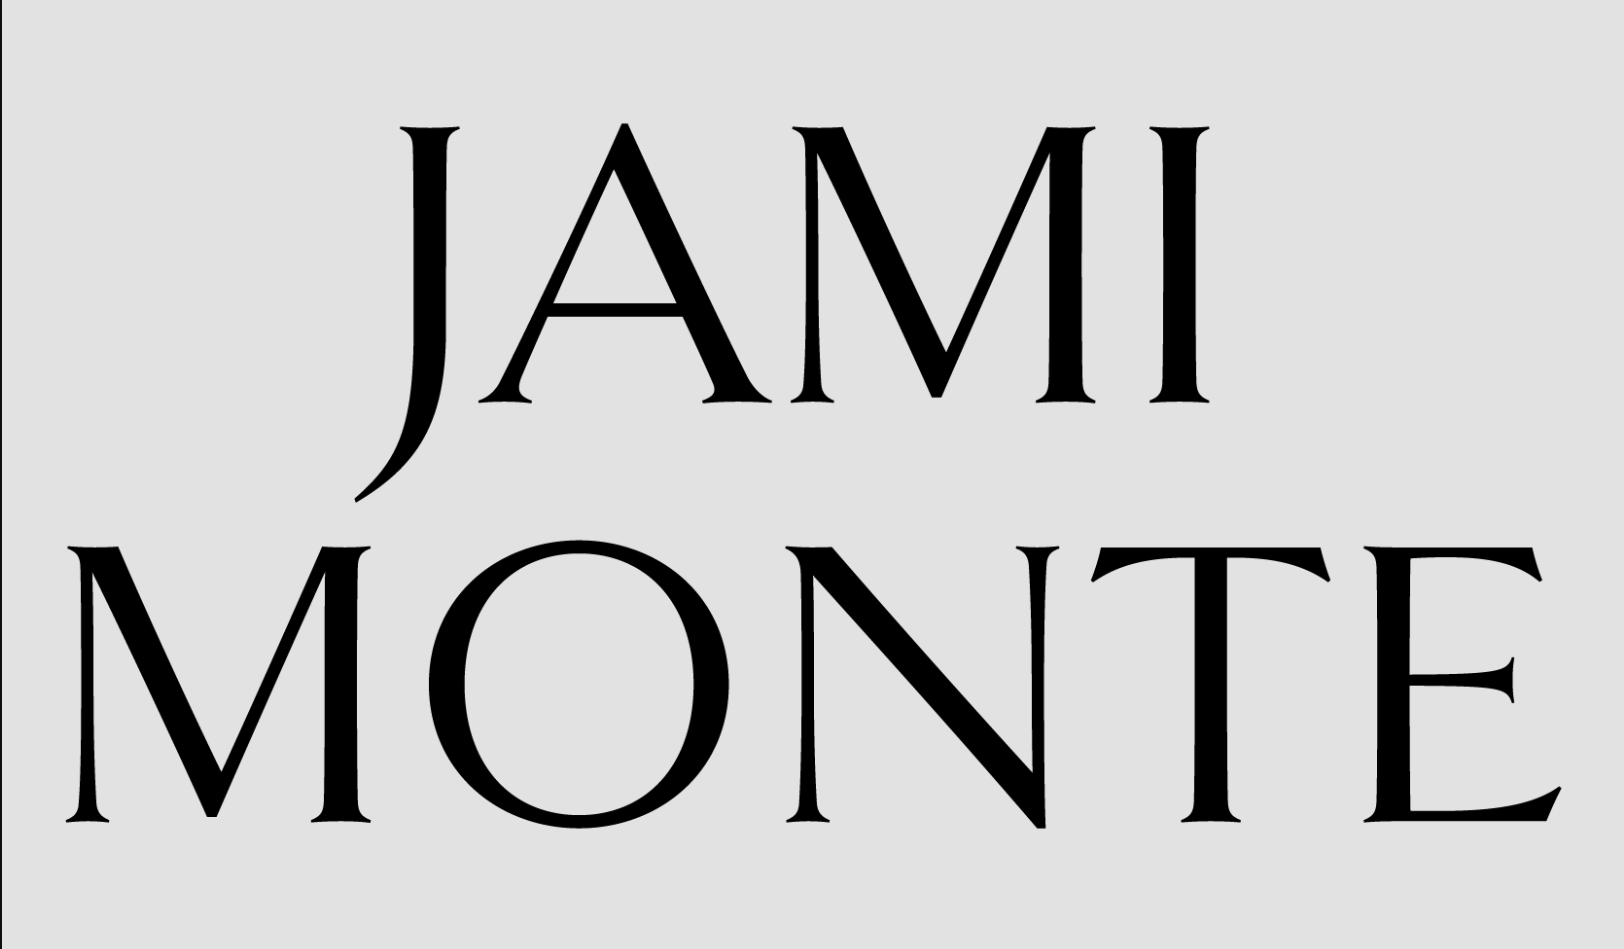 Jami Monte logo.png